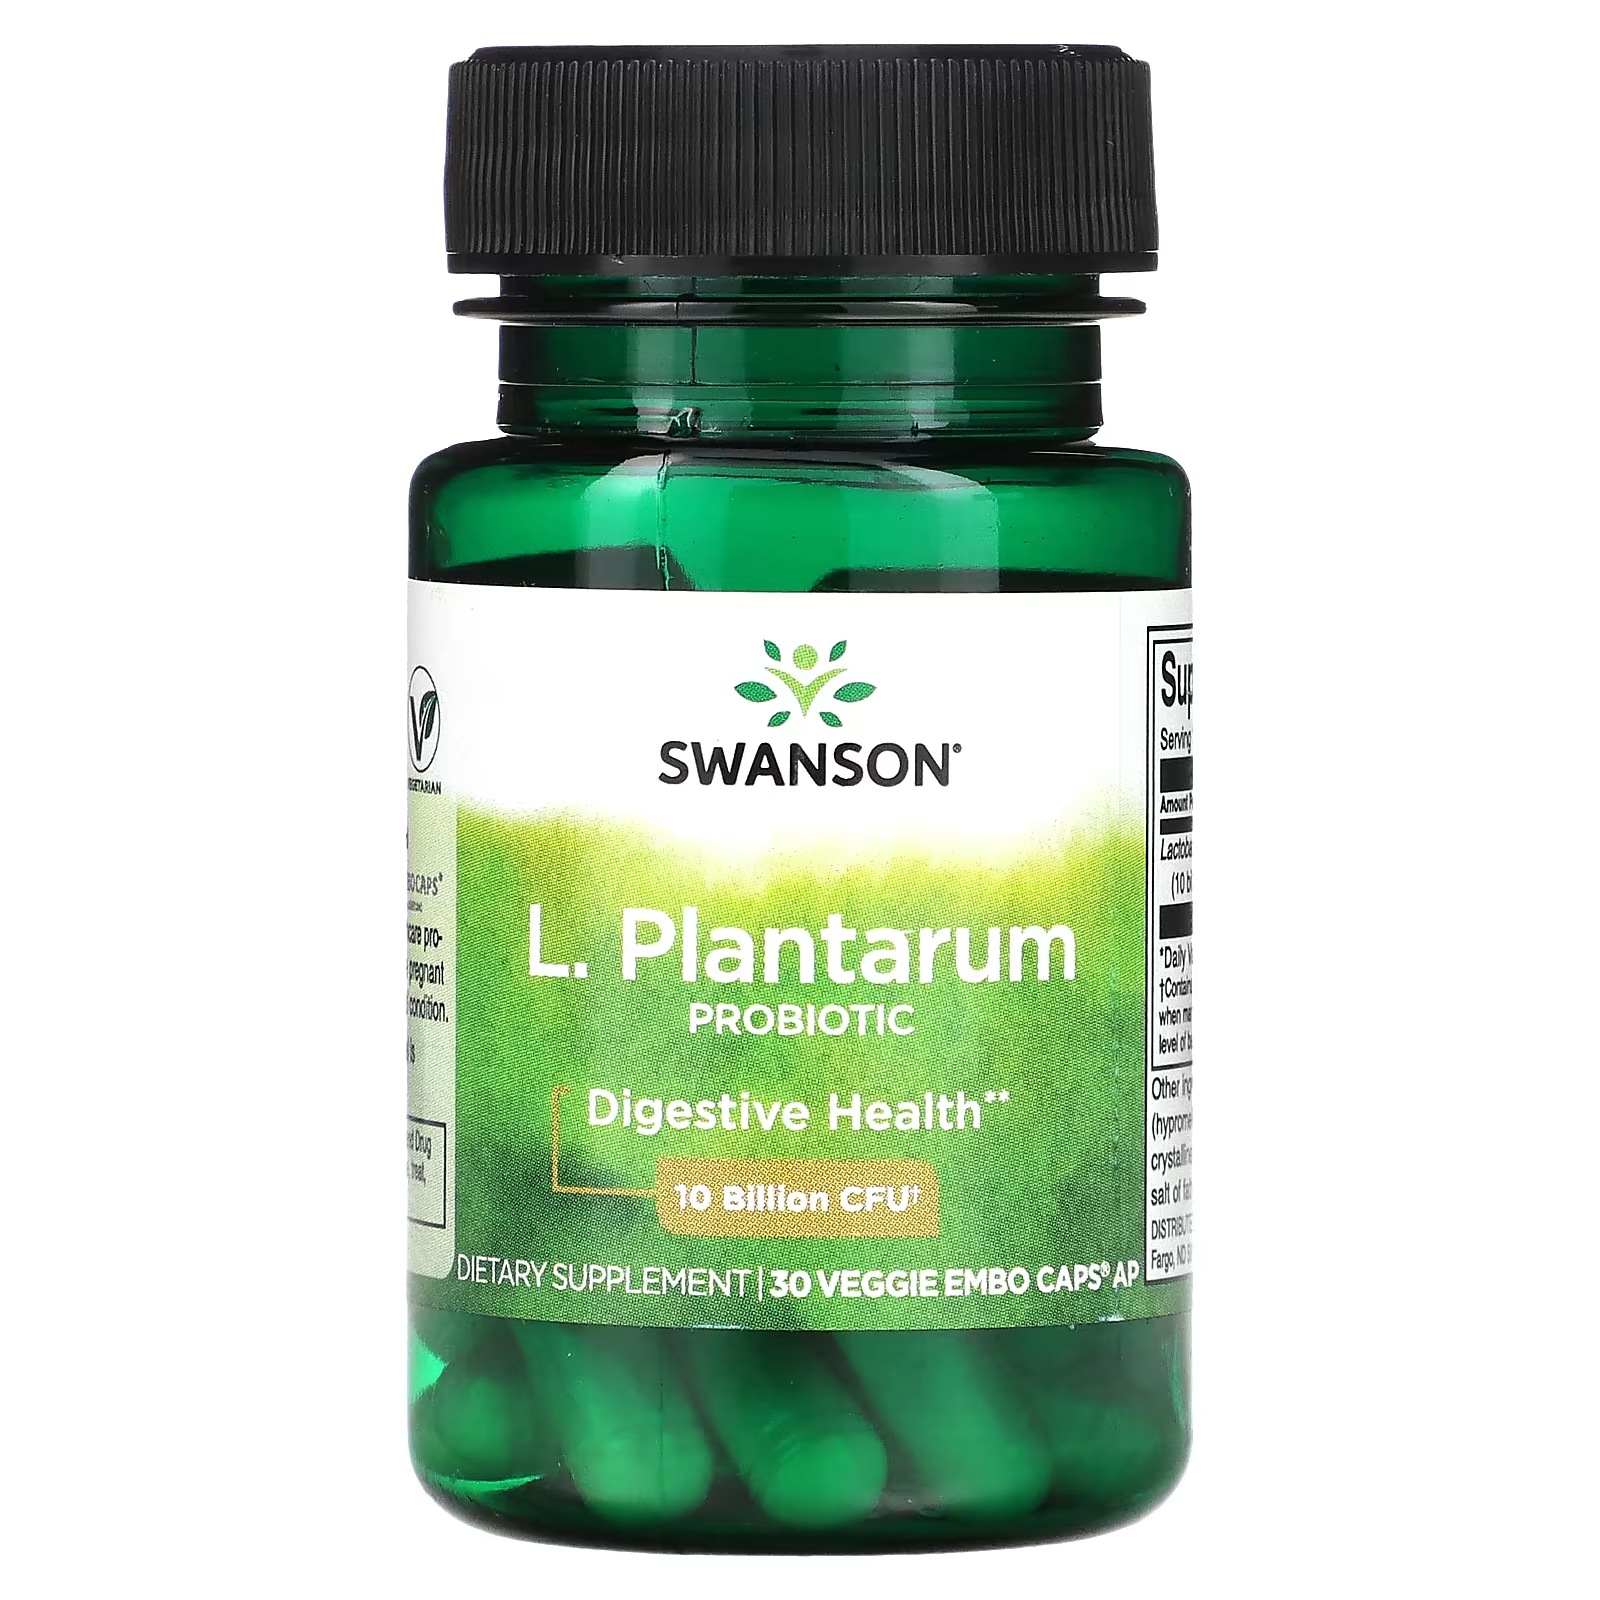 Пищевая добавка Swanson L. Plantarum Probiotic, 30 капсул nature s bounty ацидофильные пробиотики двойная упаковка 100 таблеток в каждой